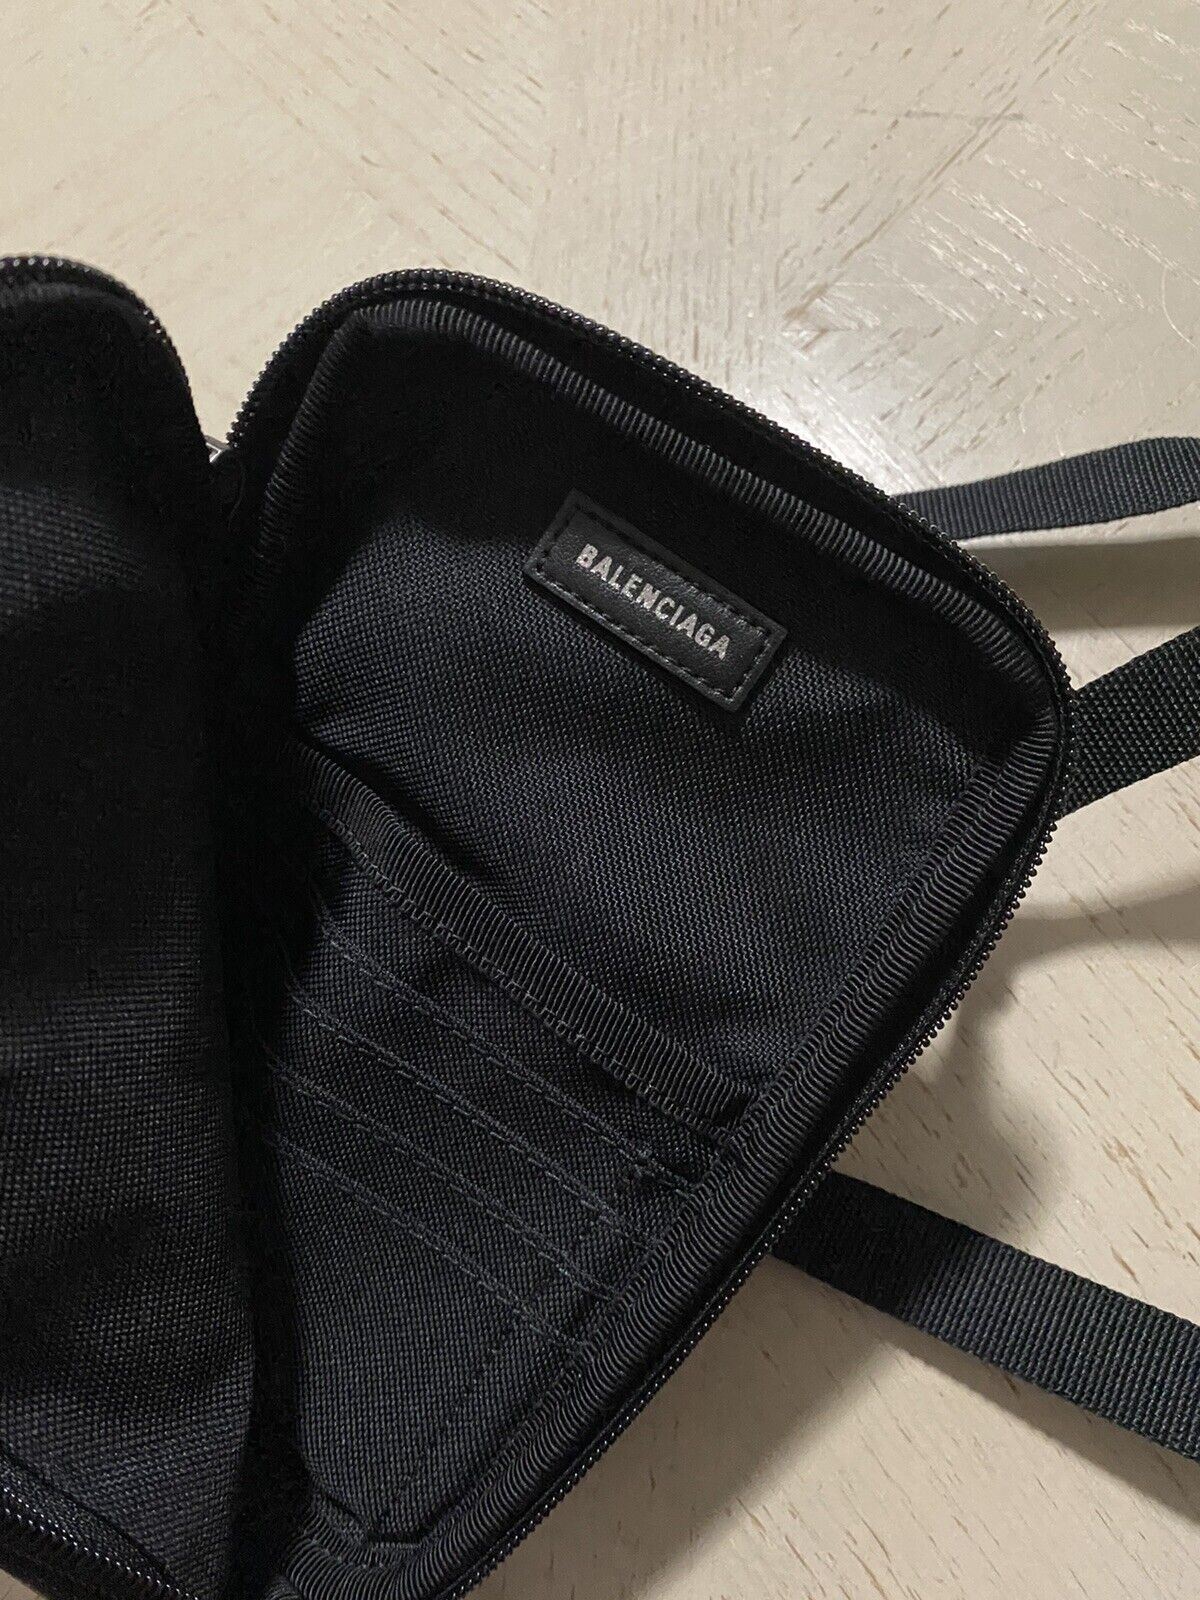 New Balenciaga Small Nylon Crossbody Bag Khaki Italy